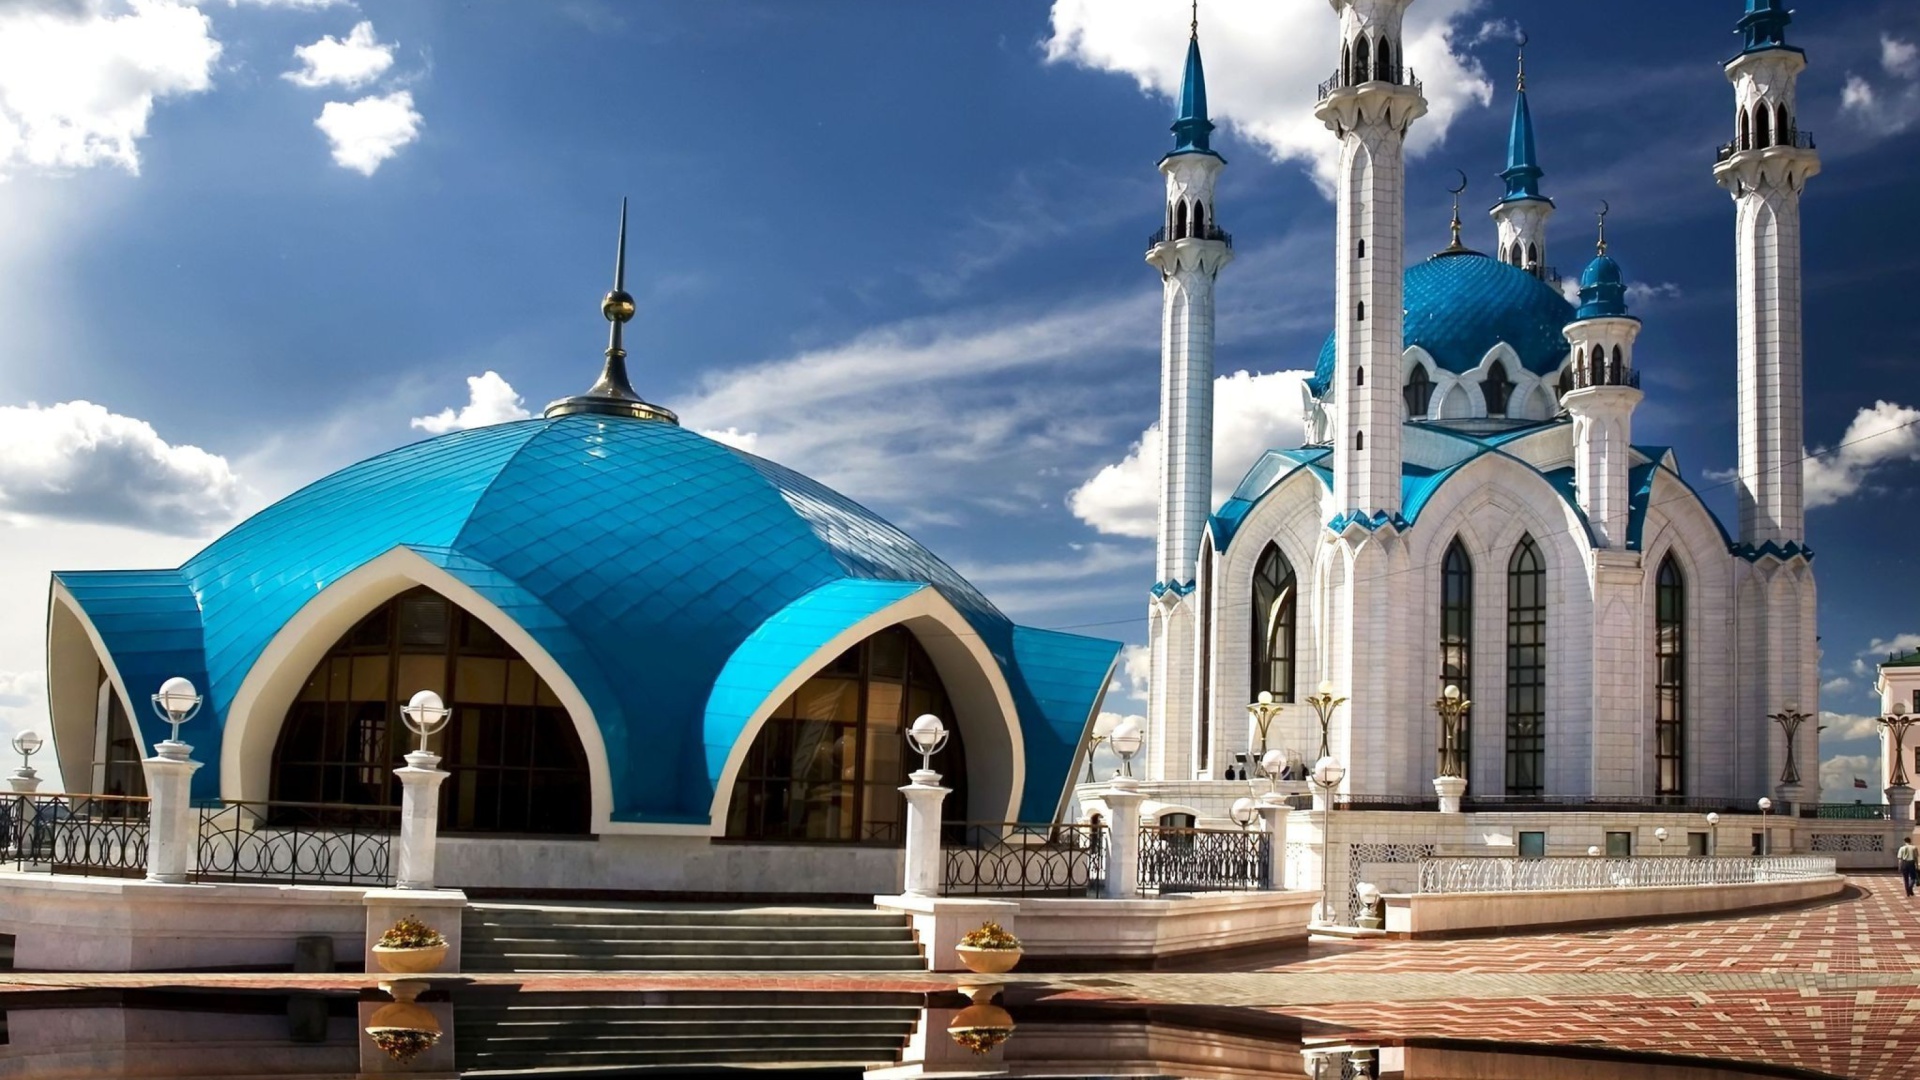 Kul Sharif Mosque in Kazan screenshot #1 1920x1080